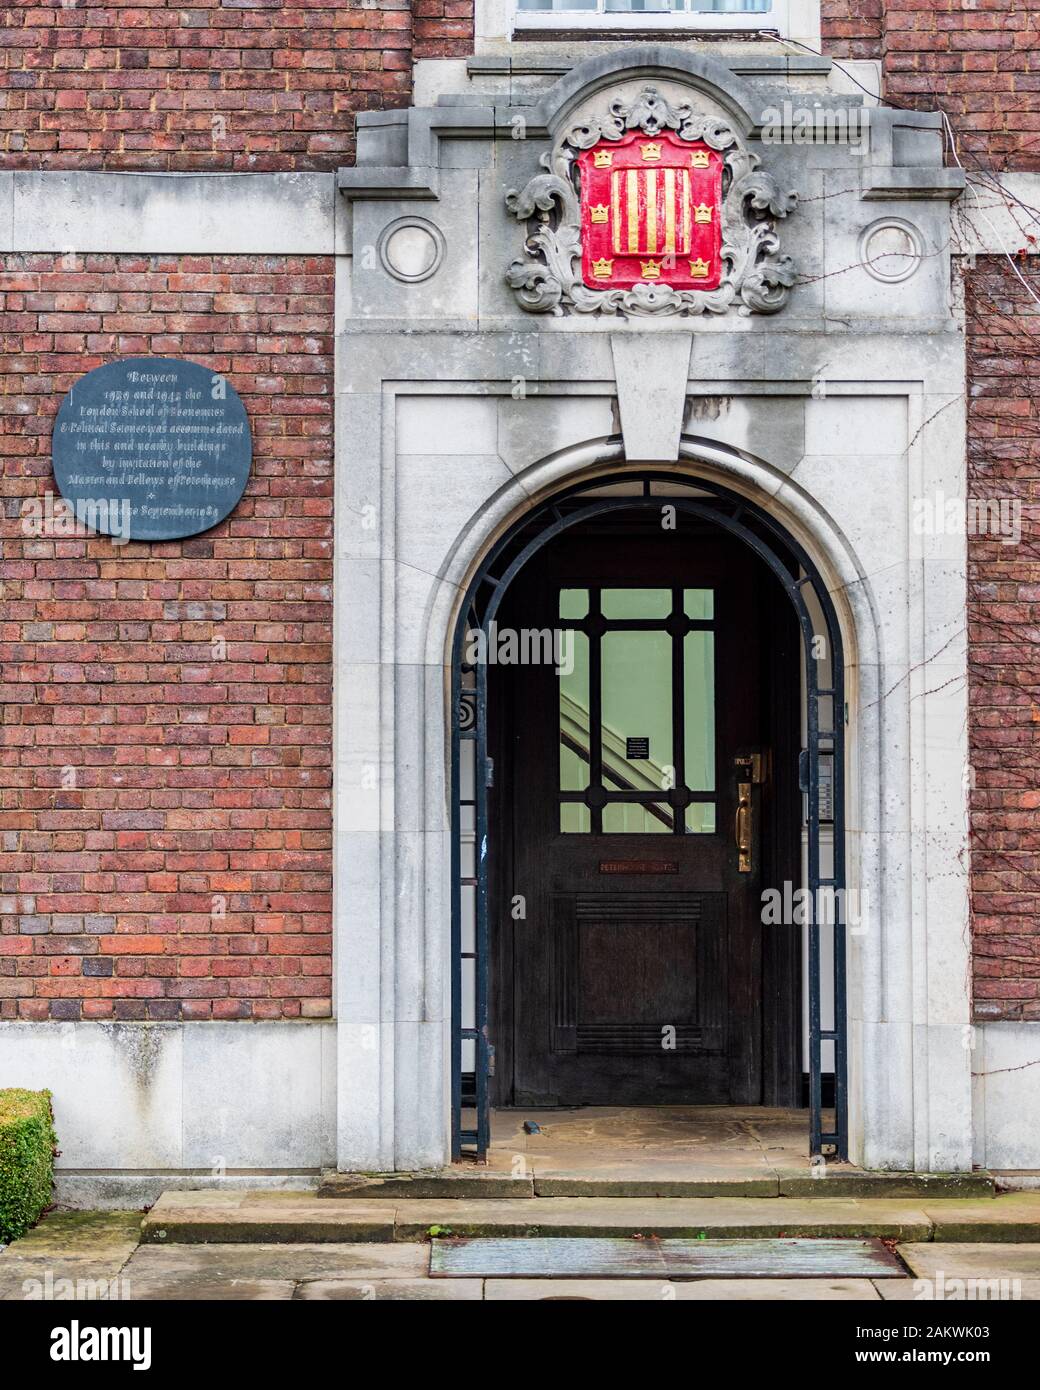 Peterhouse Hostel, Peterhouse College, Université De Cambridge. L'auberge abritait la London School of Economics 1939-1945. L'Auberge Peterhouse. Banque D'Images